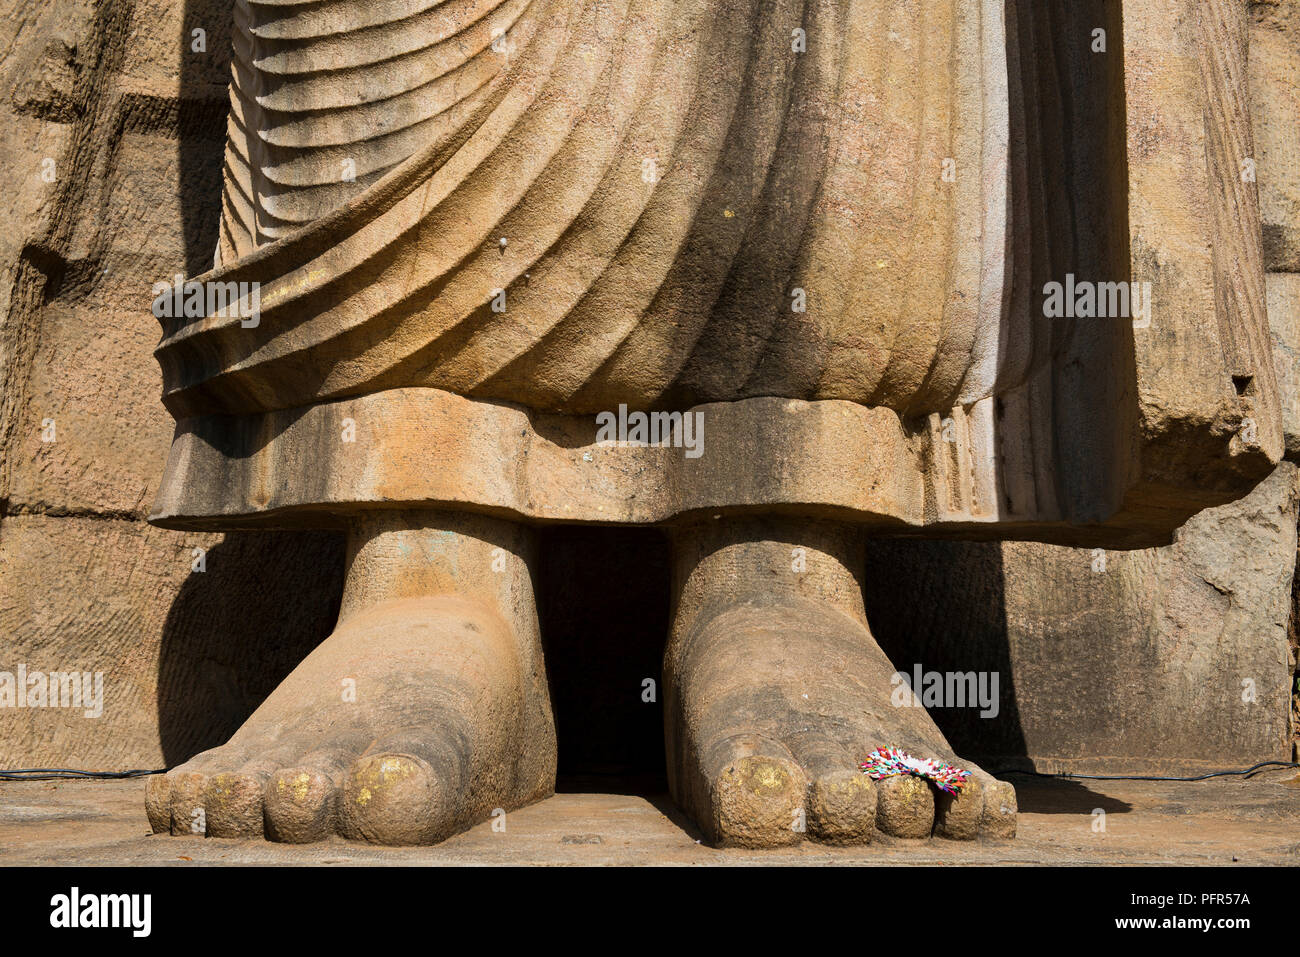 Sri Lanka, North Central Province, Awukana Vtharaya, feet of Avukana Buddha Stock Photo